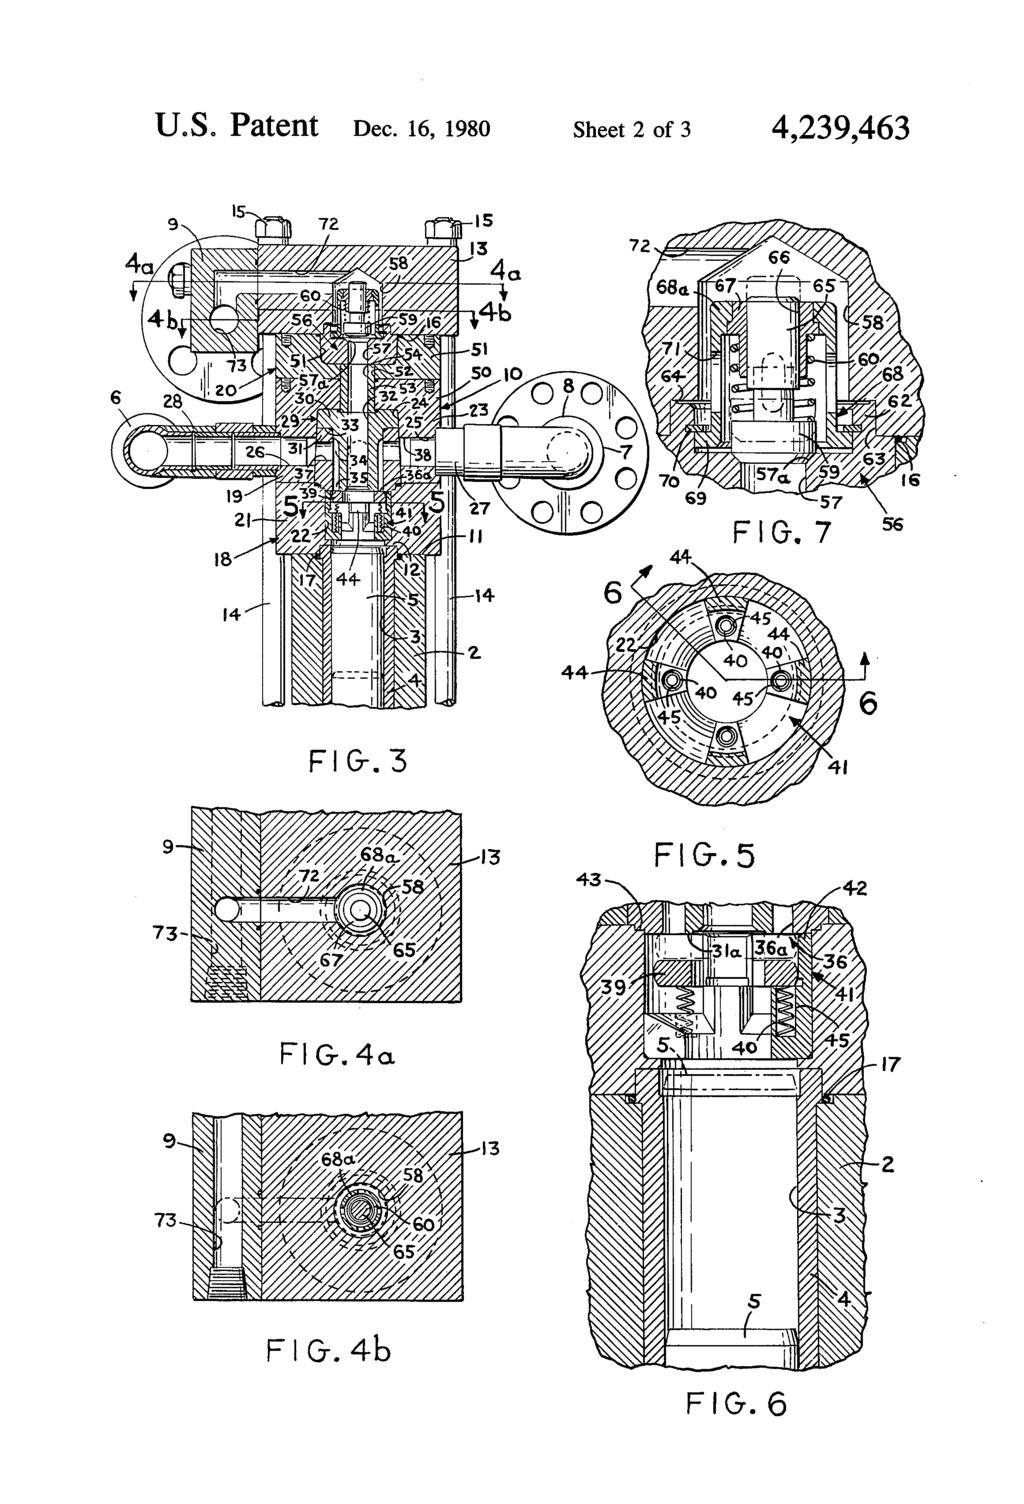 U.S. Patent Dec.